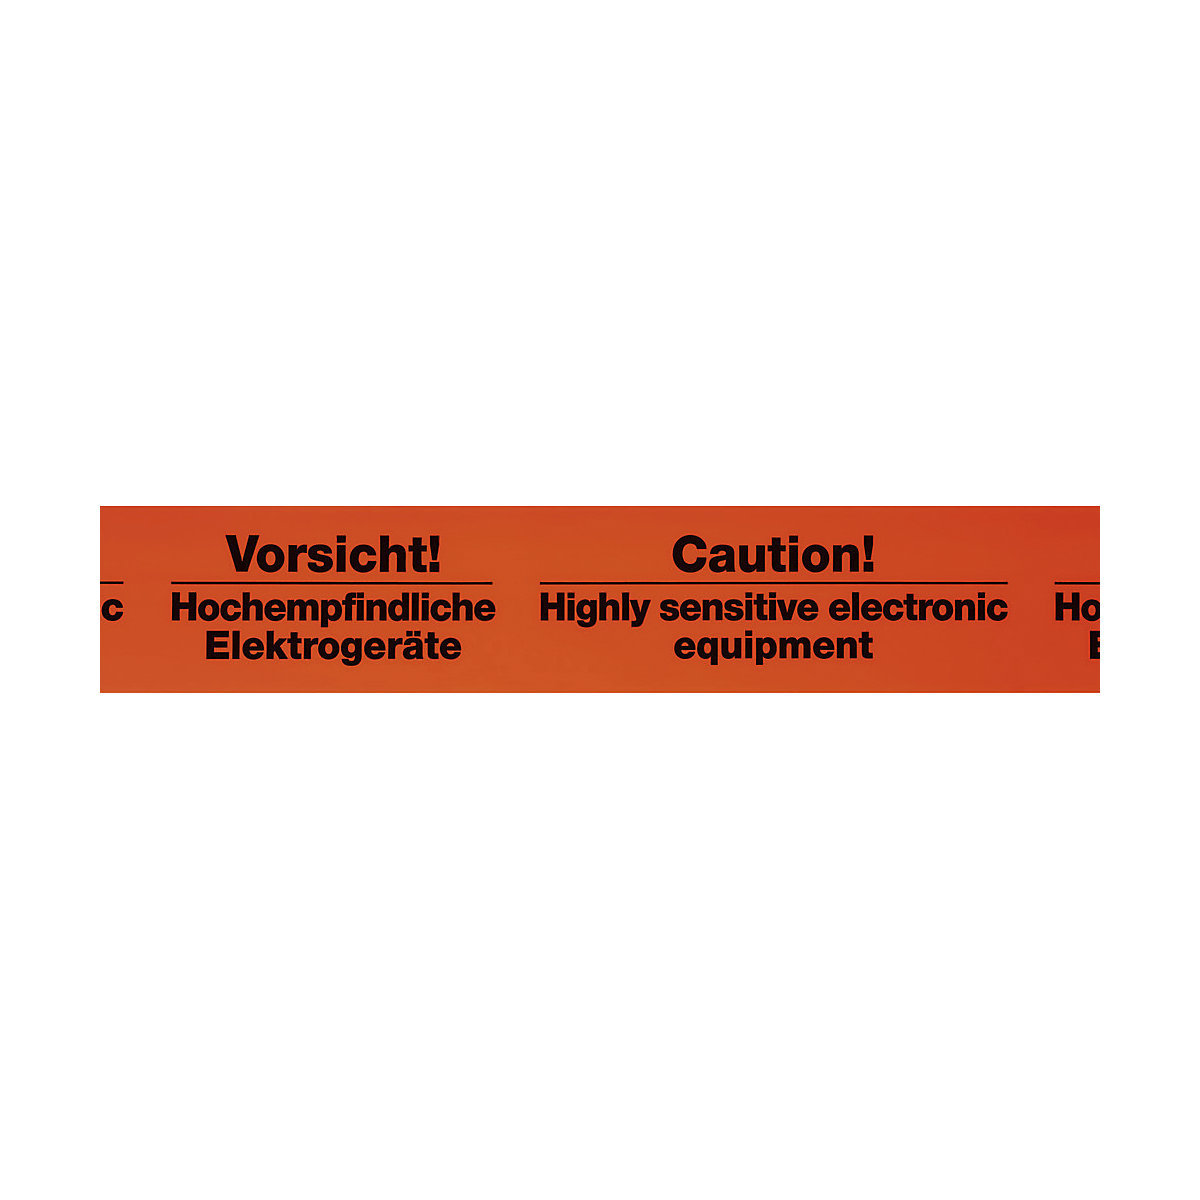 Warn-Klebeband, Aufdruck Vorsicht! Hochempfindliche Elektrogeräte, VE 3 Stk, Bandbreite 75 mm, ab 5 VE-1